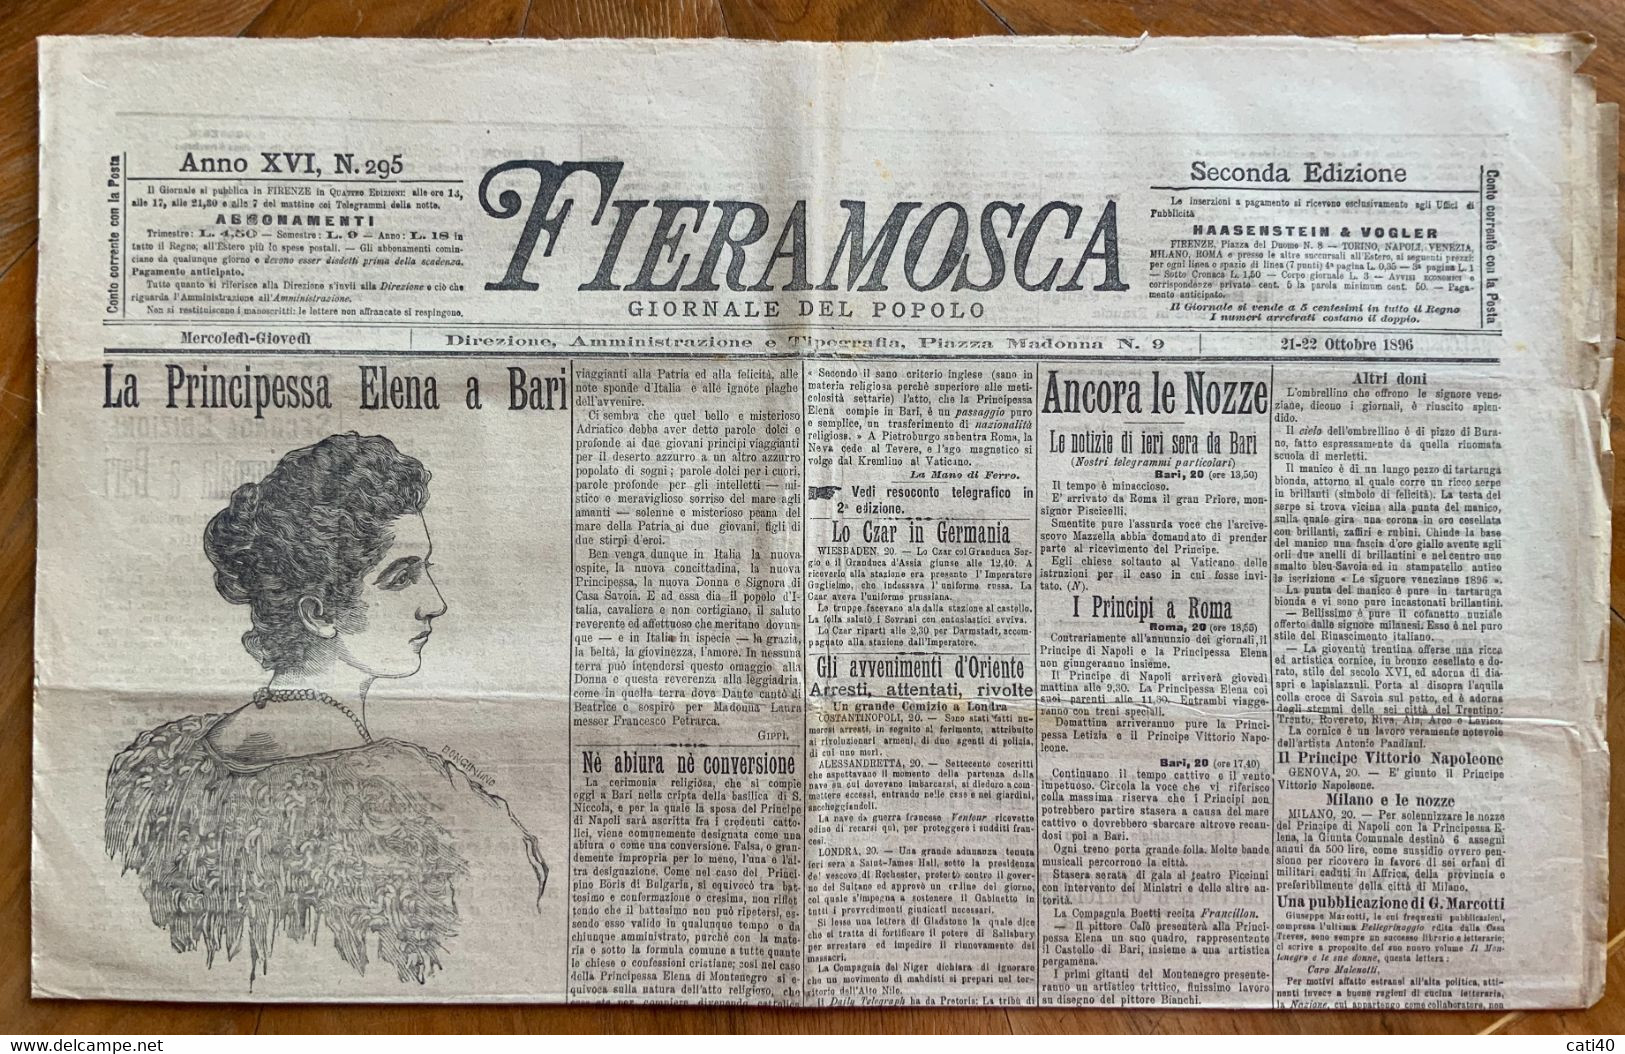 FIERAMOSCA GIORNALE DEL POPOLO Del 21-22/10/1896  : LA PRINCIPESSA ELENA A BARI ... CON RARE PUBBLICITA' - COMPLETO - Prime Edizioni